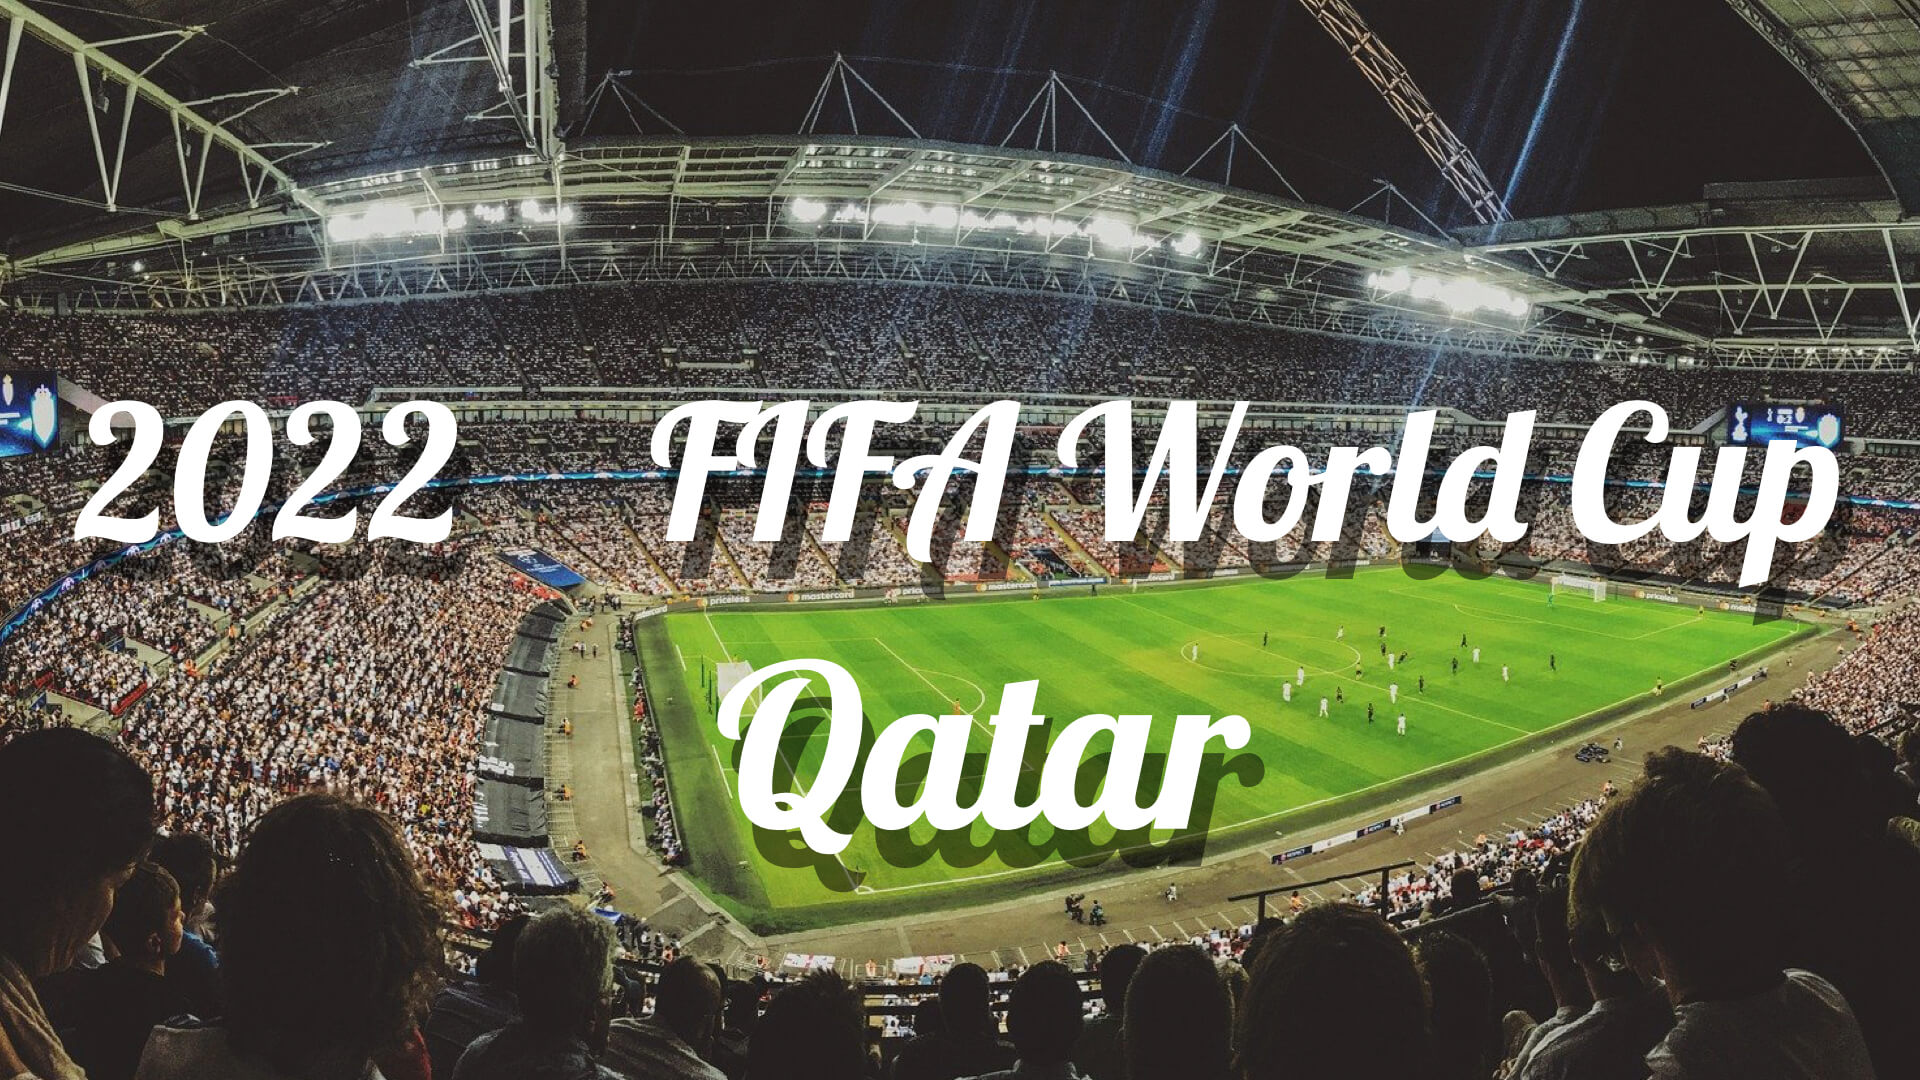 海外からfifaワールドカップ22をライブで見る方法 カタール大会 中国wi Fi Vpn研究所